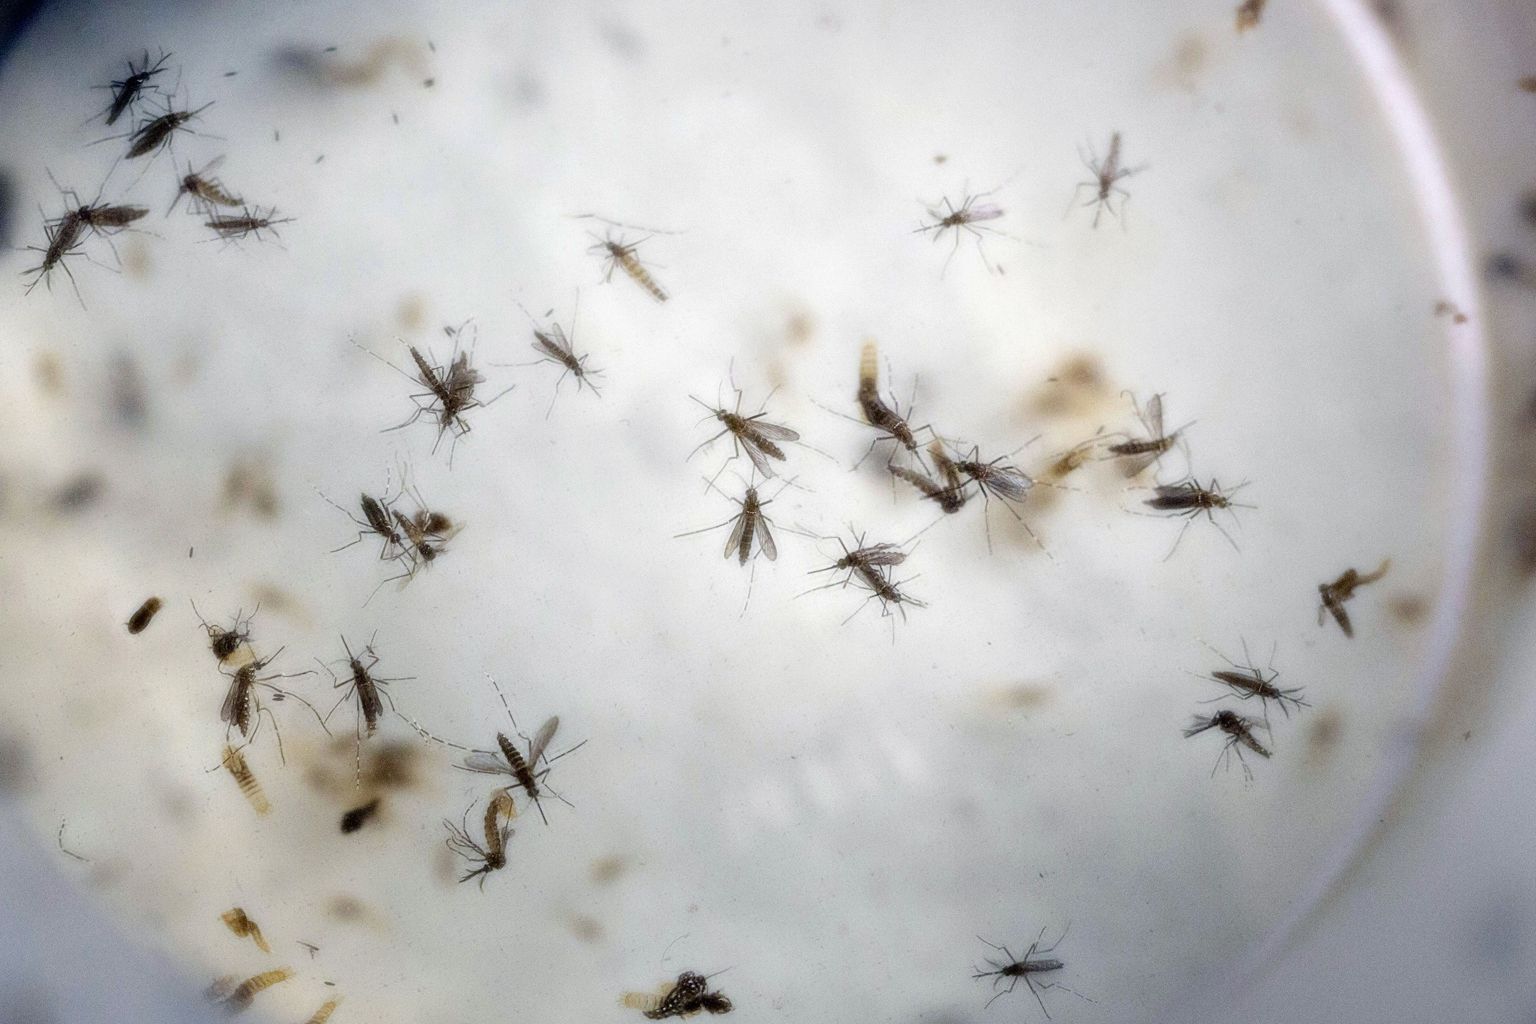 Zika viirust kannavad emased moskiitod.